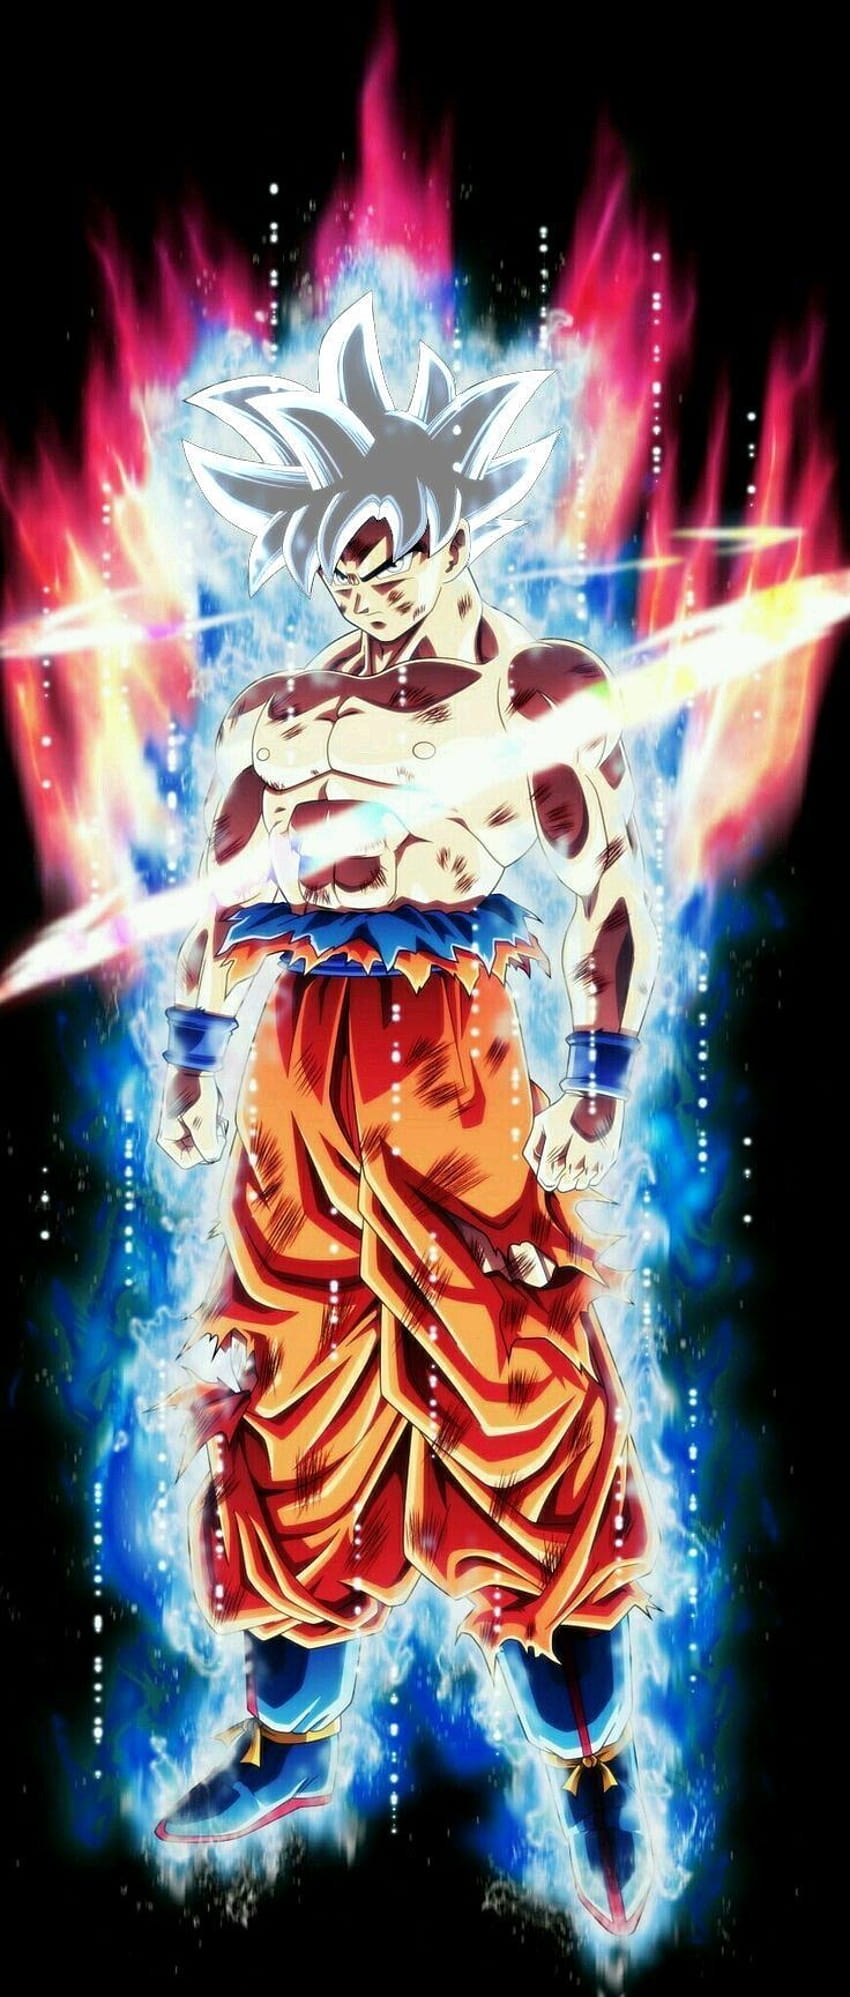 Goku instinto superior completo live wallpaper #goku #instintosuperior